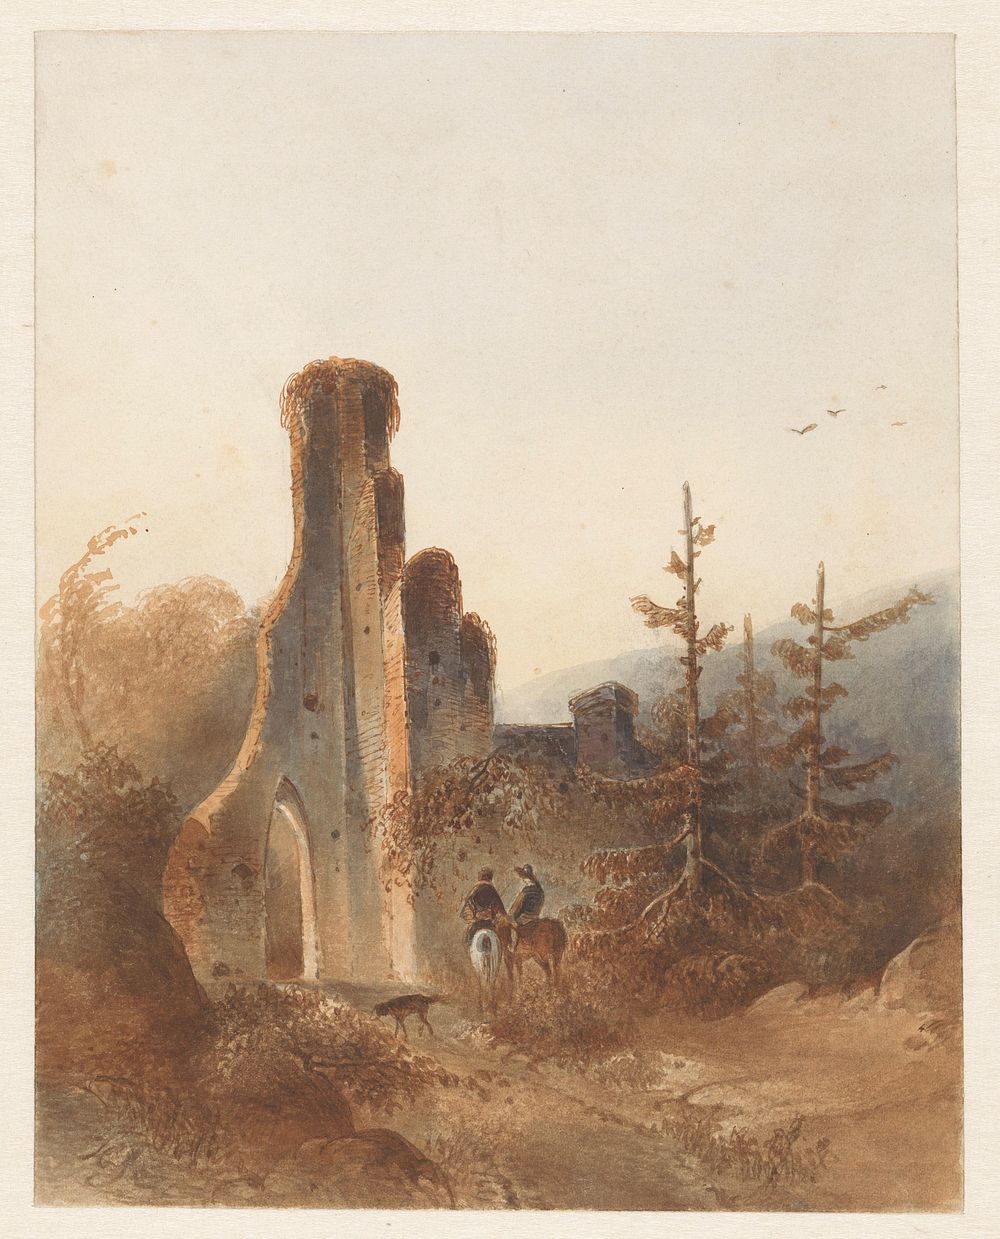 Landschap met twee ruiters bij een ruïne (c. 1800 - c. 1900) by anonymous and David Pièrre Giottino Humbert de Superville